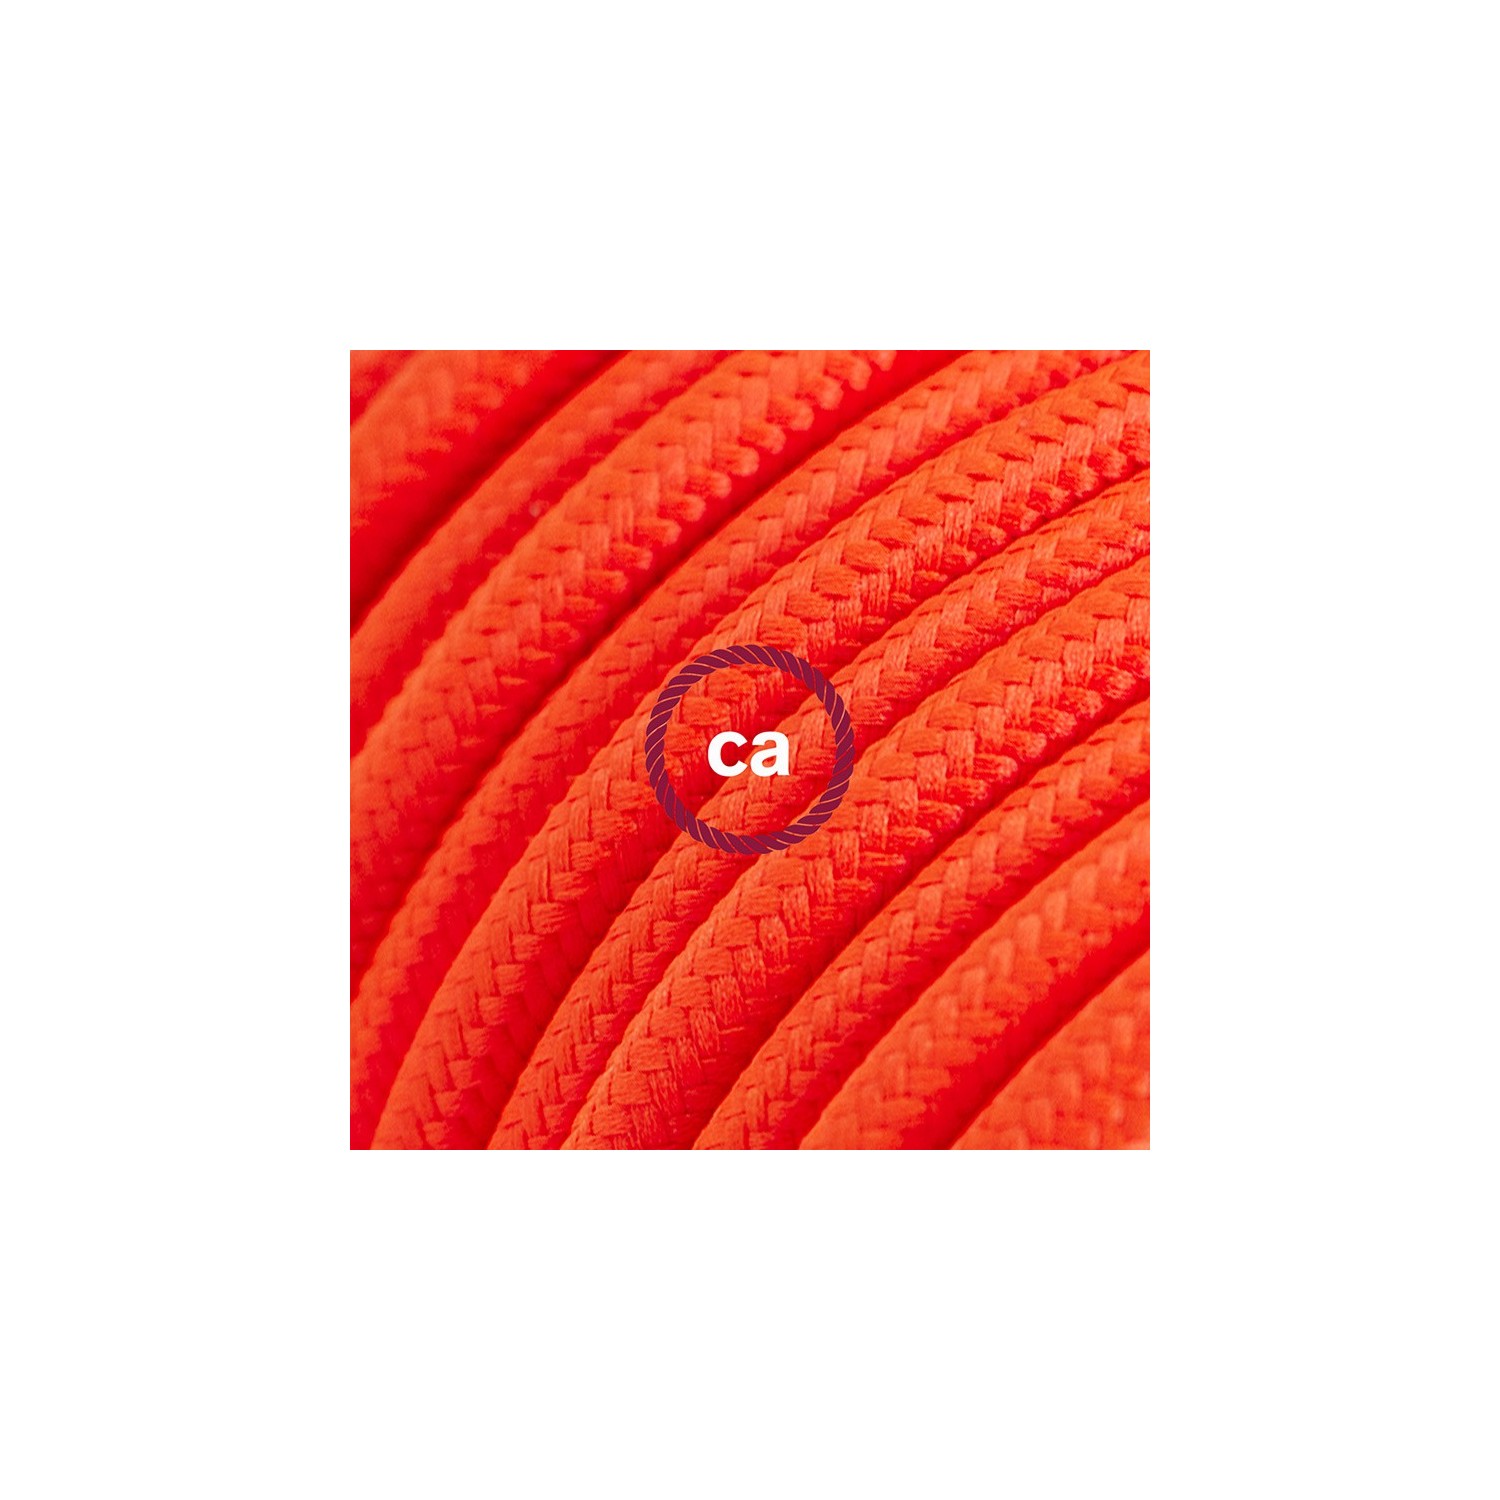 Podaljševalni kabel za napajanje (2P 10A) fluo oranžen rejon RF15 - Made in Italy